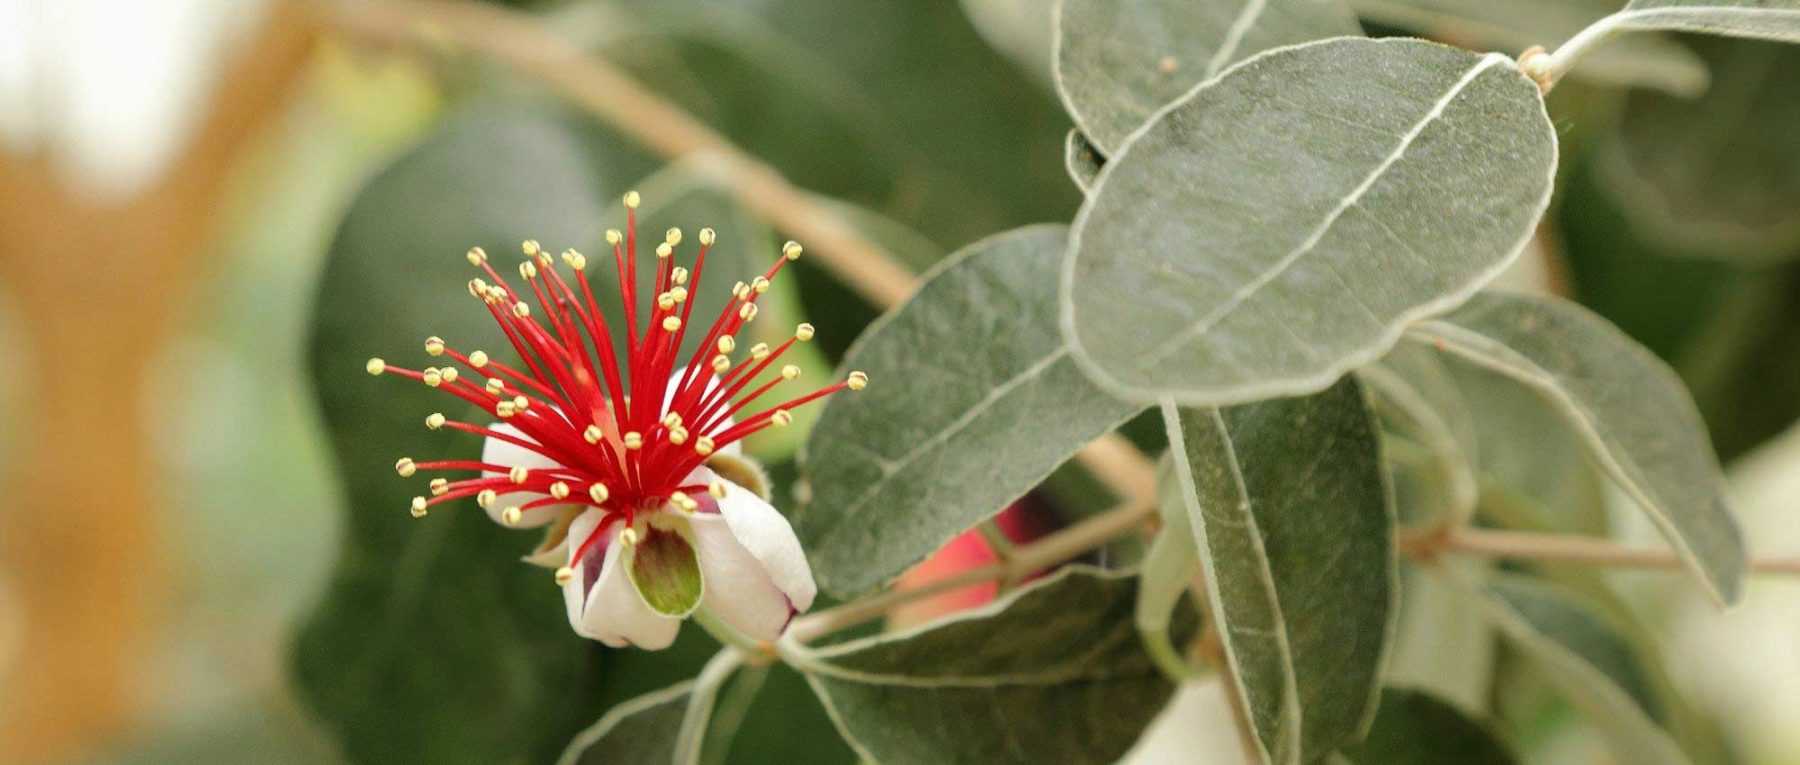 Feijoa sellowiana, Goyavier du Brésil : planter, cultiver et récolter ses fruits